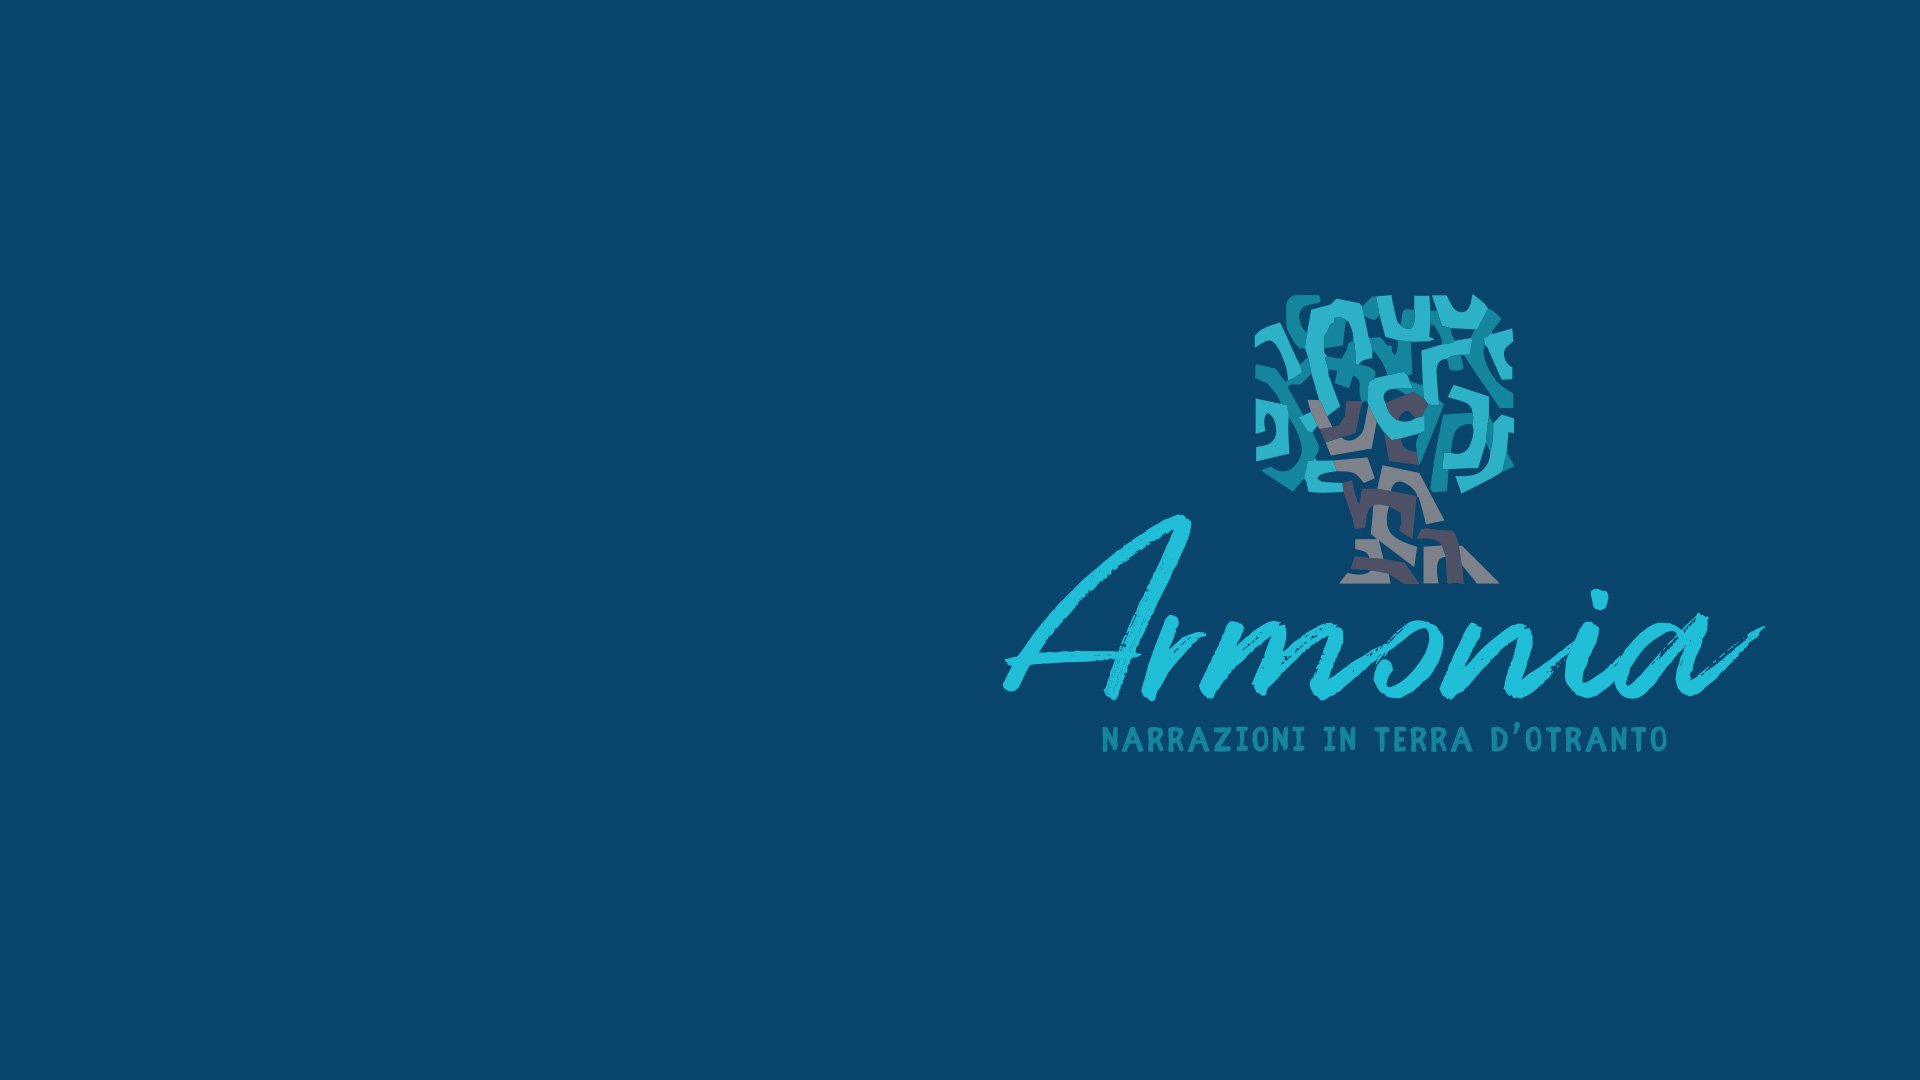 sfondo logo festival armonia - Associazione NarrAzioni